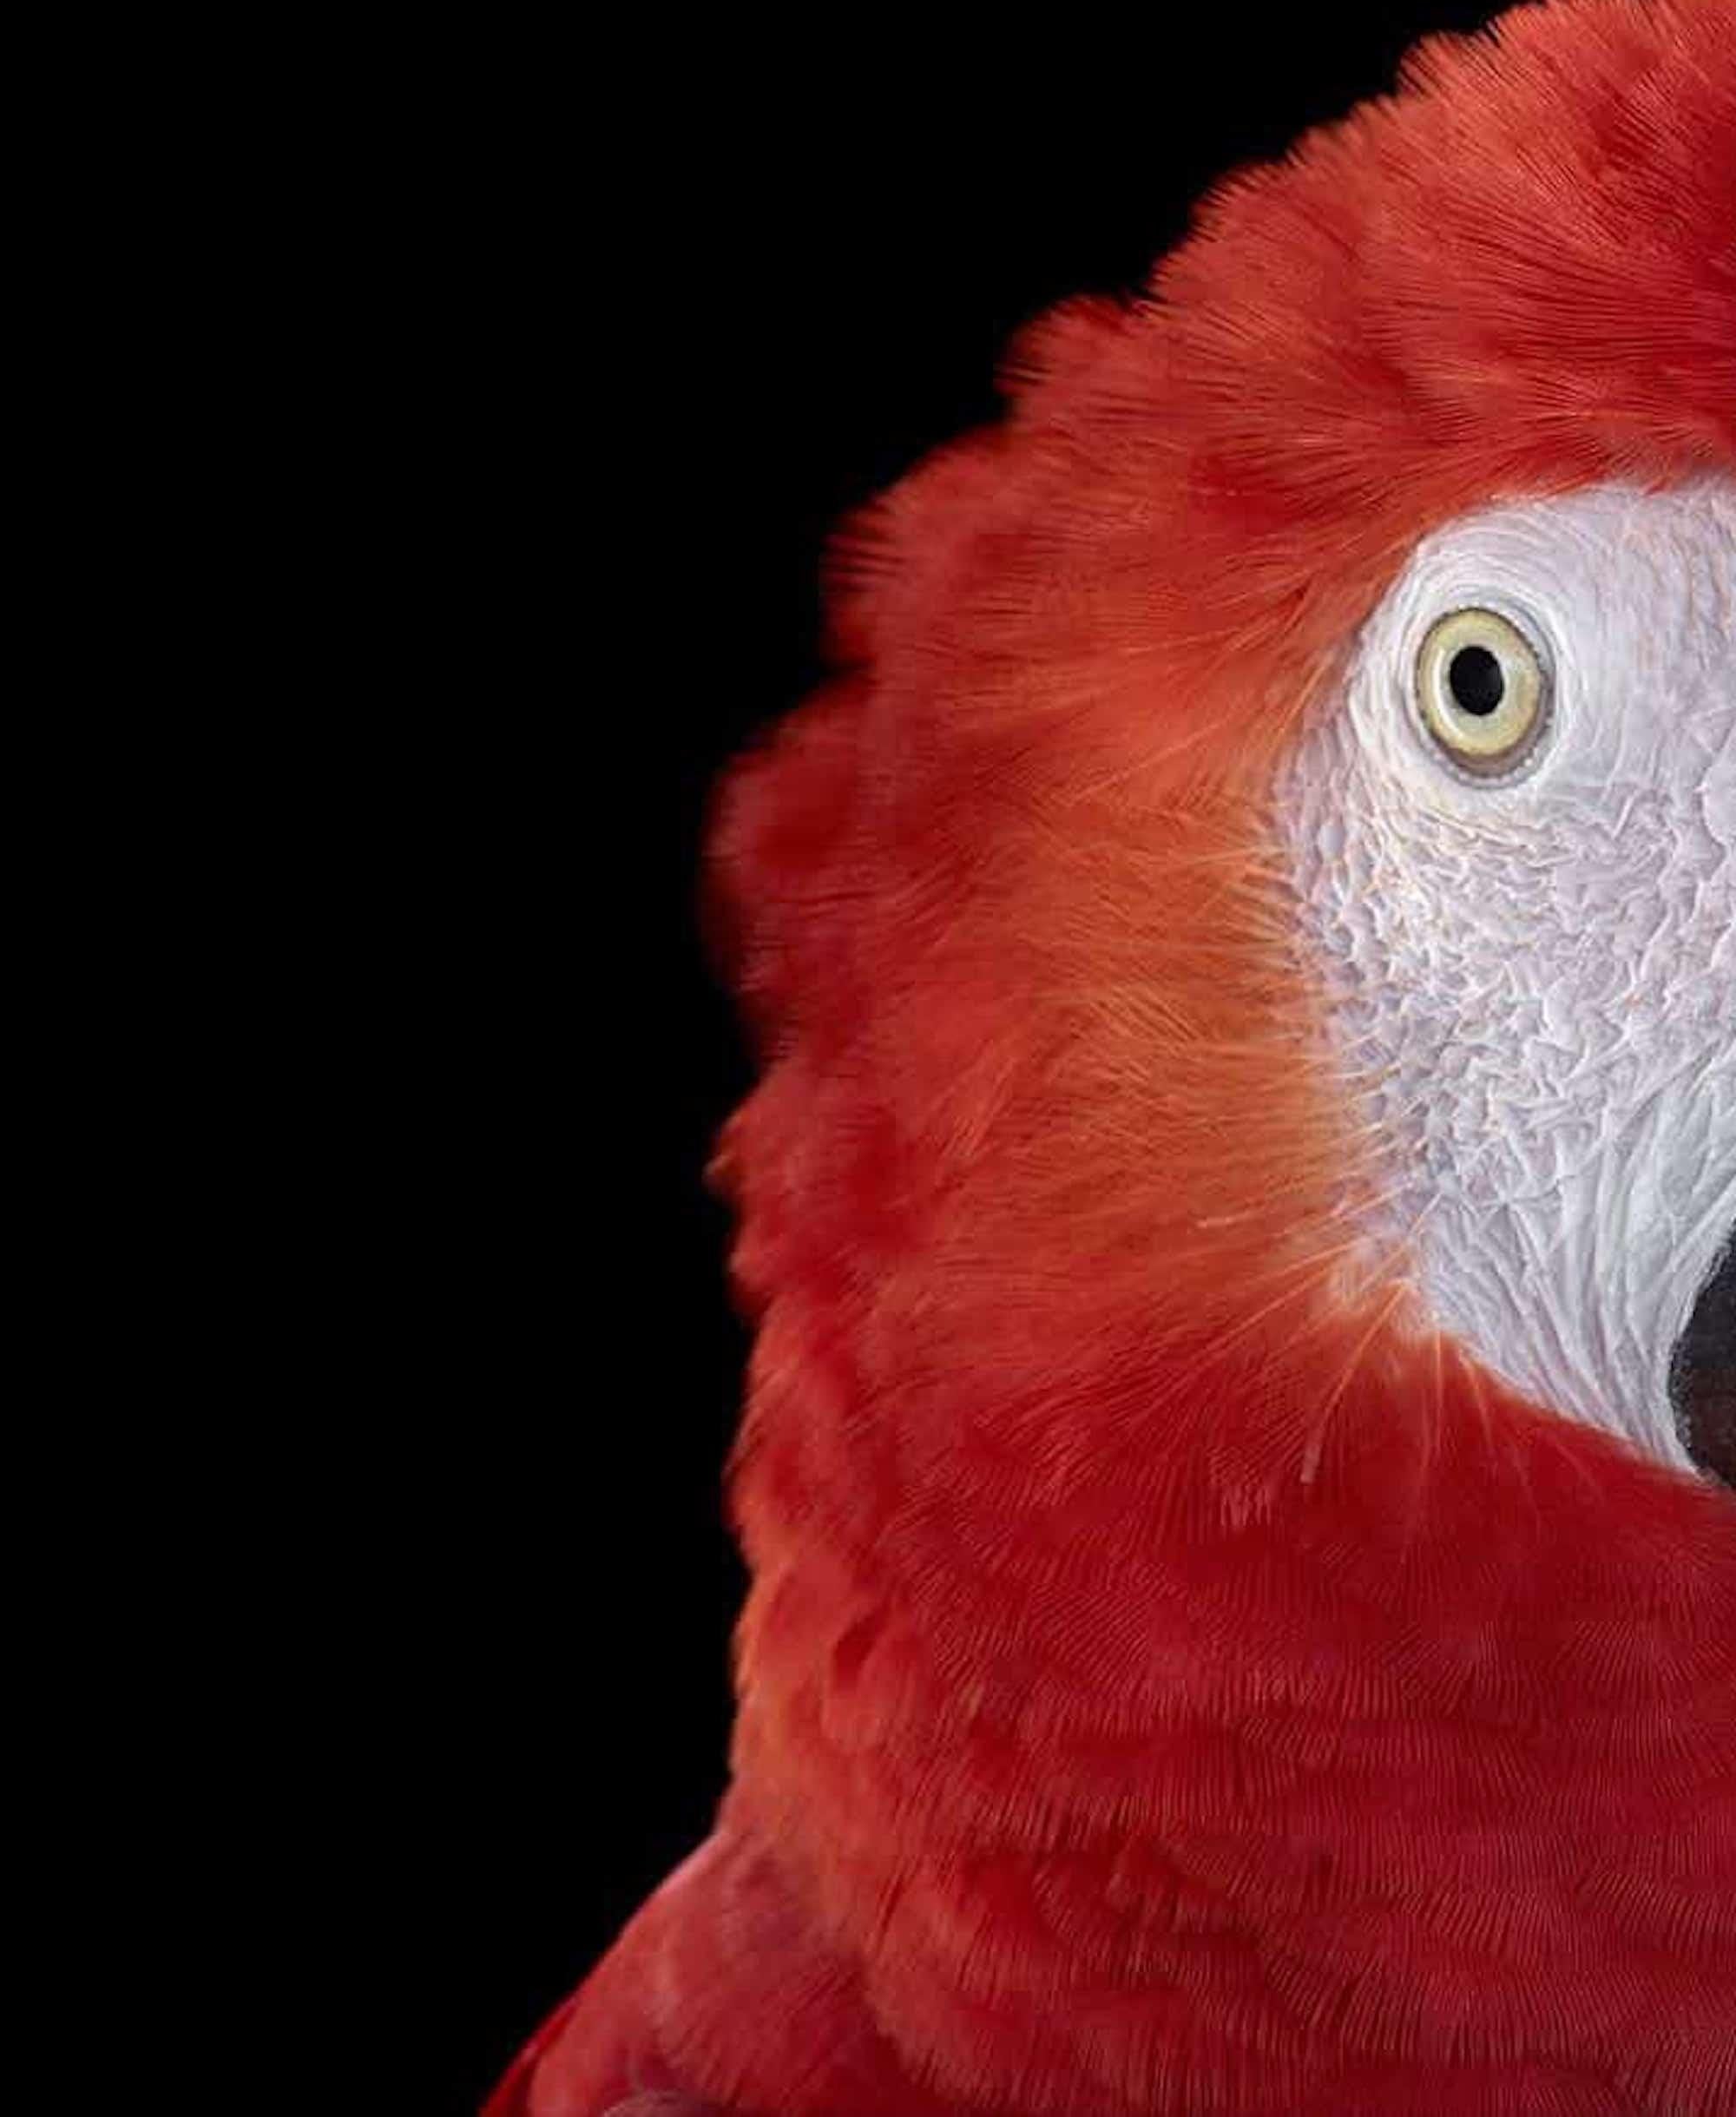 Scarlet Macaw #1 by Brad Wilson - Animal portrait photography, wild bird For Sale 2